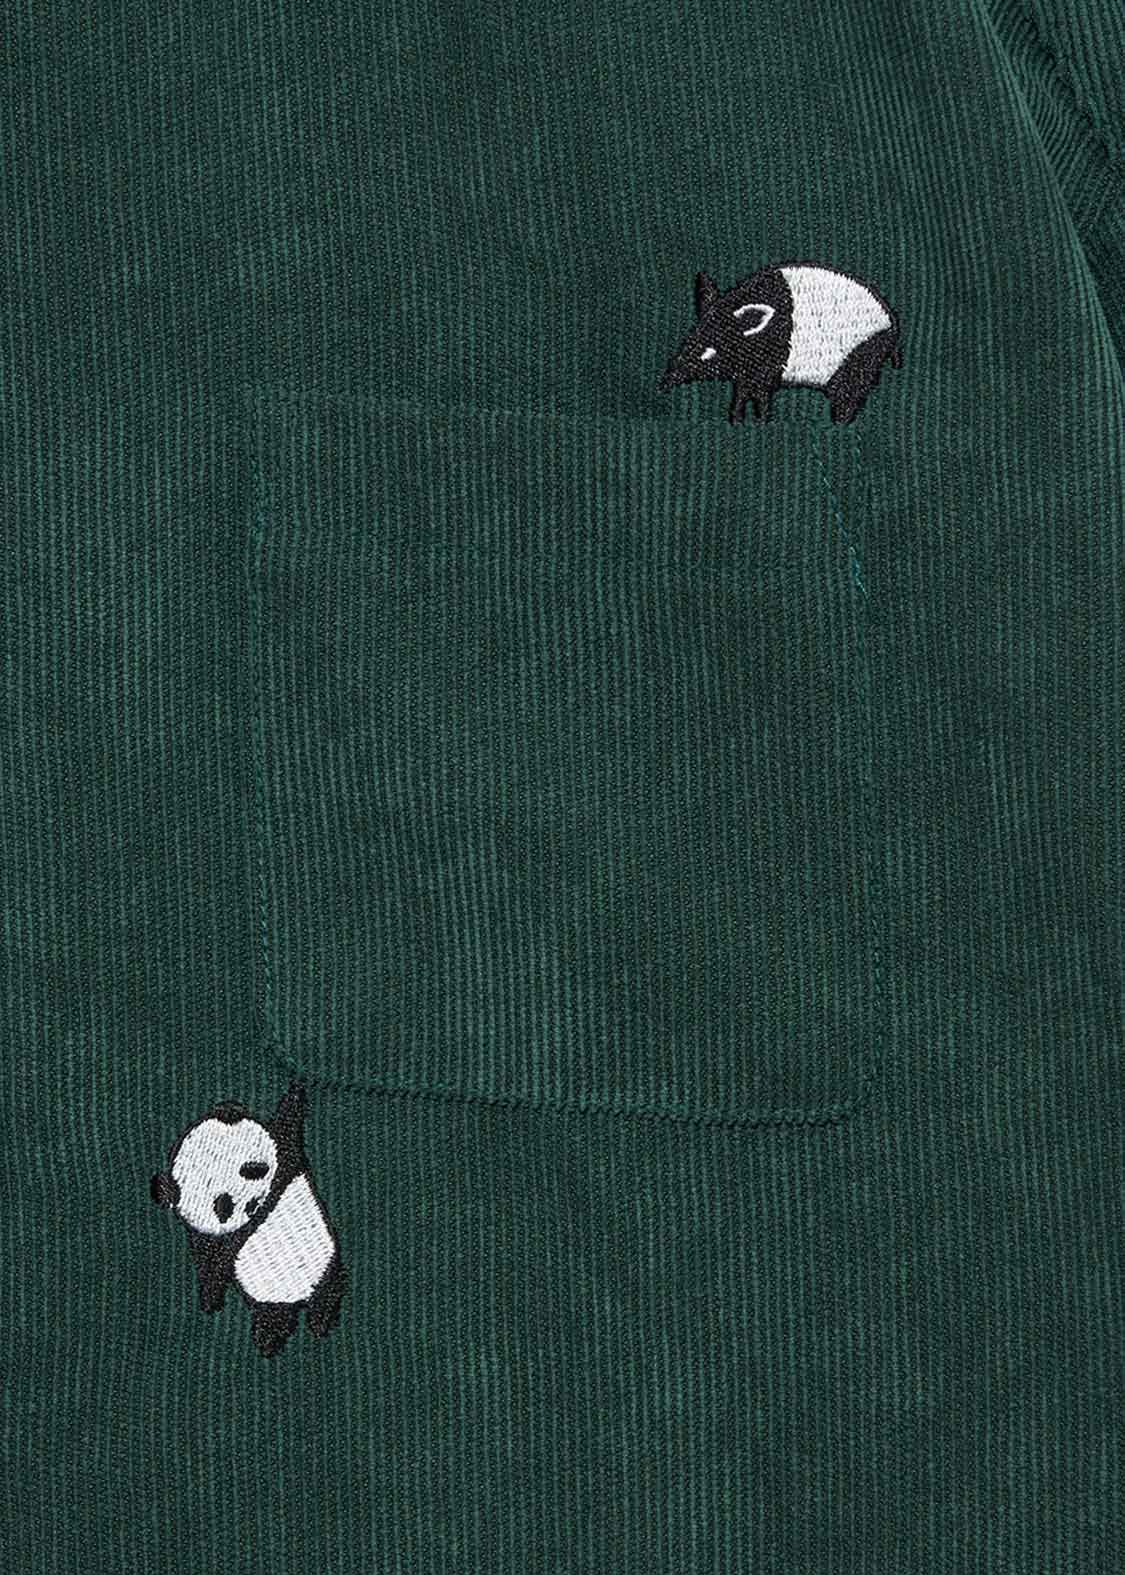 Corduroy Long Sleeve Shirt One-Piece (Rolling Pandas)